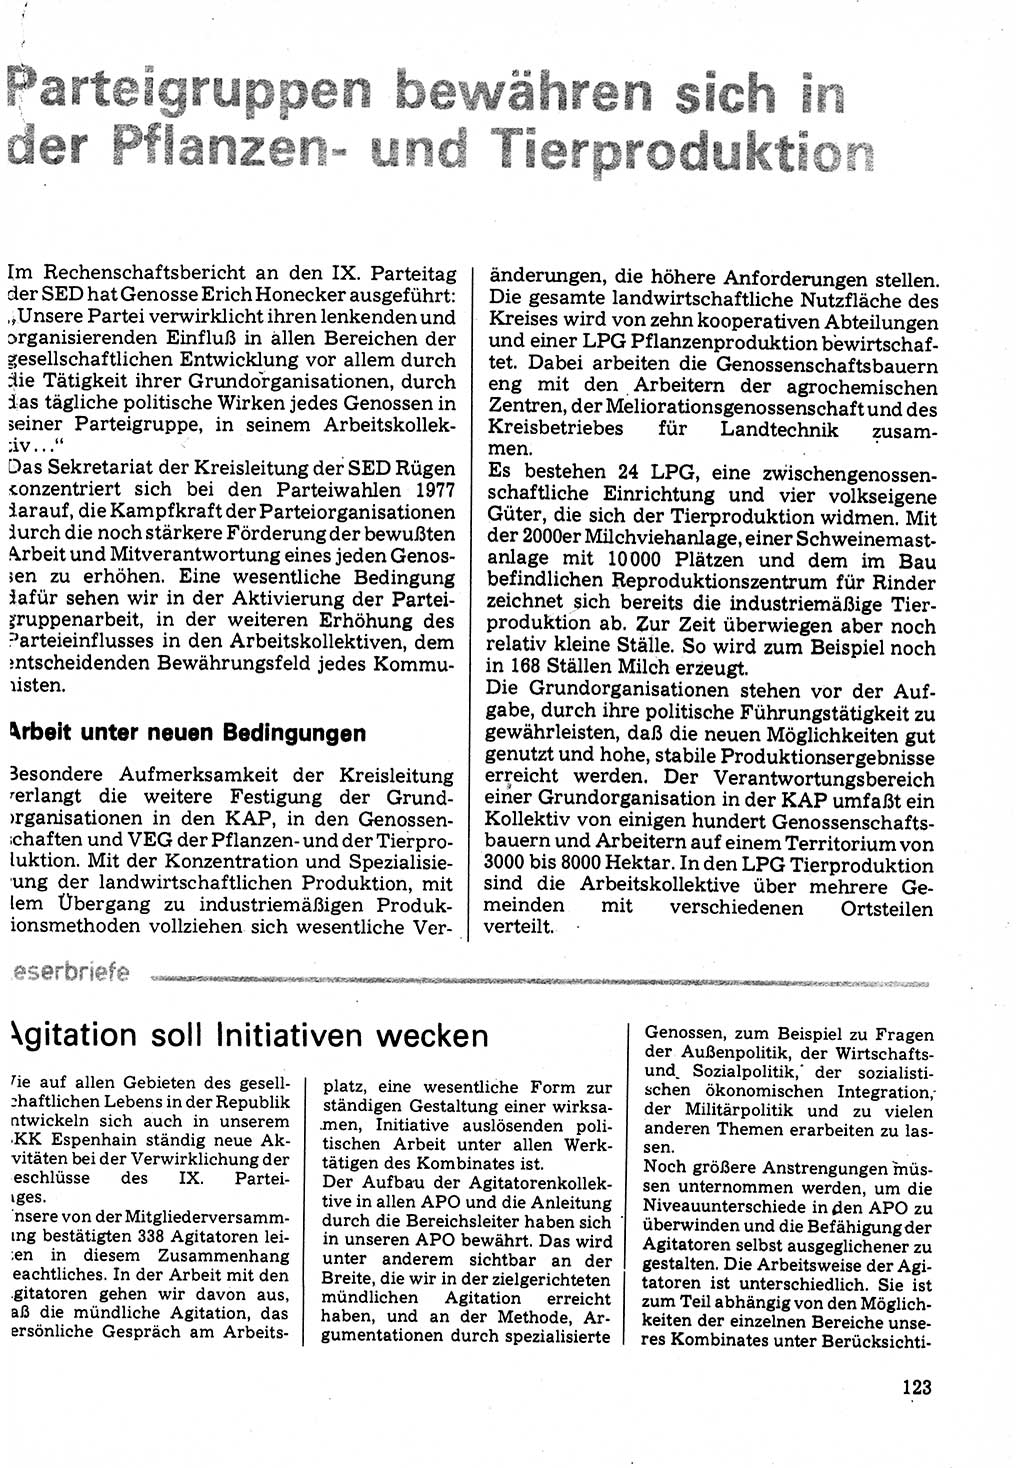 Neuer Weg (NW), Organ des Zentralkomitees (ZK) der SED (Sozialistische Einheitspartei Deutschlands) für Fragen des Parteilebens, 32. Jahrgang [Deutsche Demokratische Republik (DDR)] 1977, Seite 123 (NW ZK SED DDR 1977, S. 123)